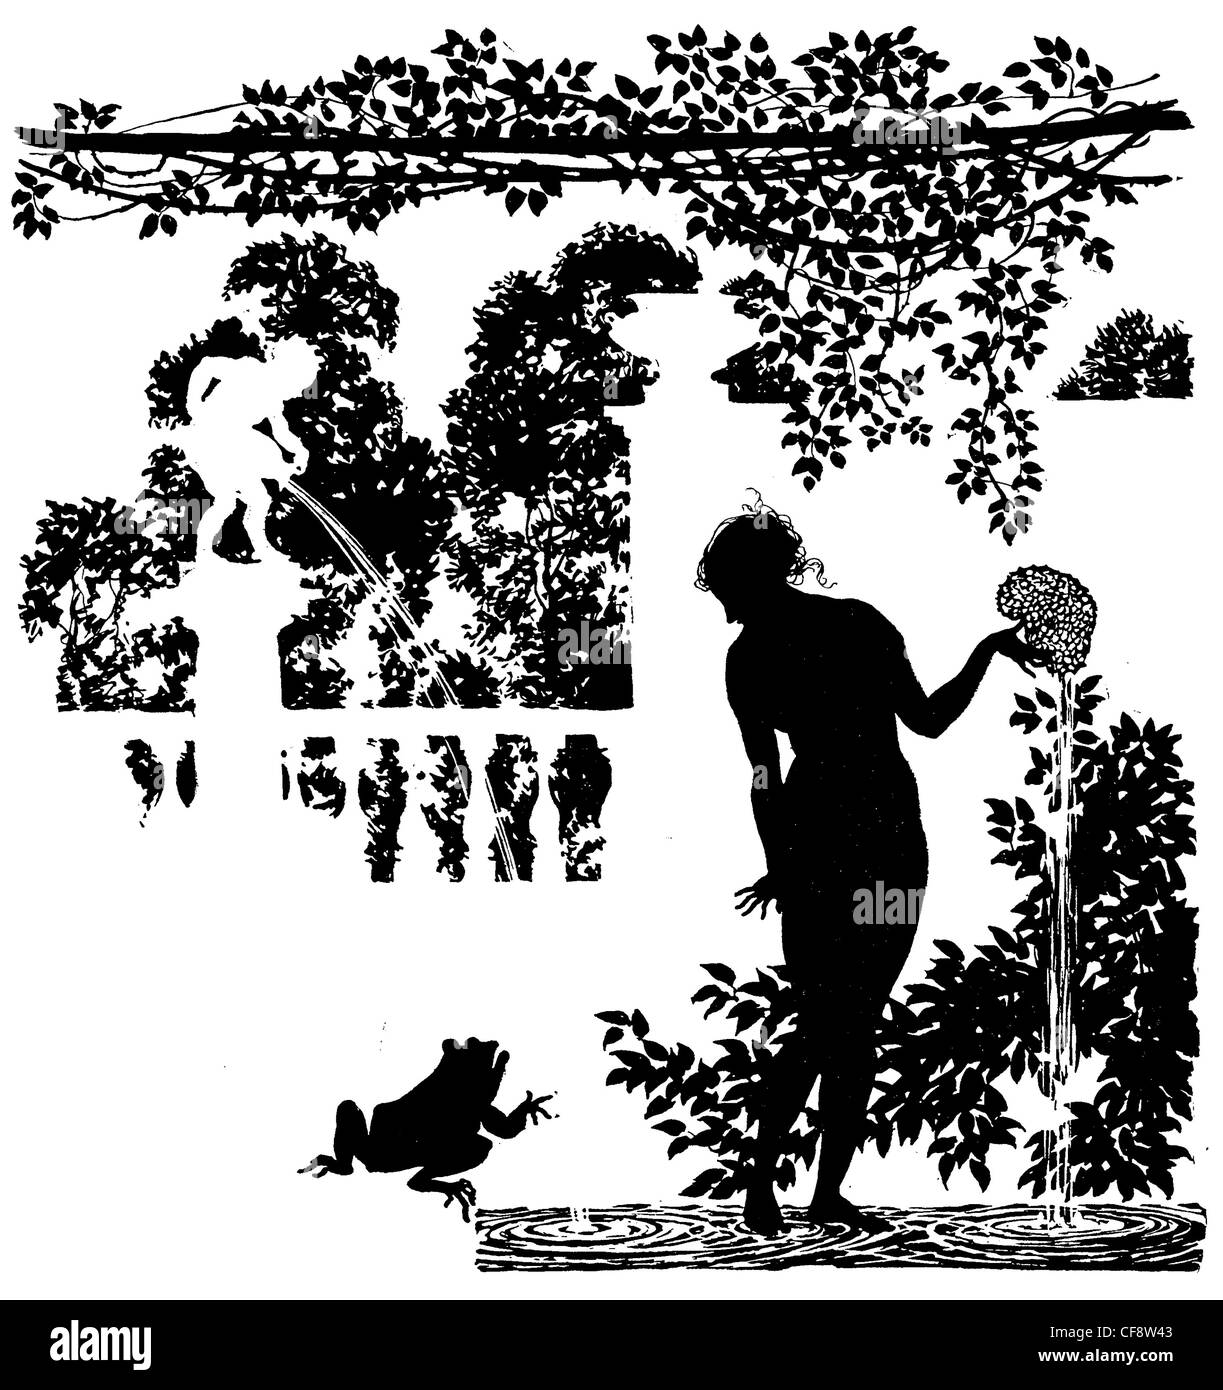 La Bella Addormentata Arthur Rackham 1920 fata malvagia strega fata libro delle Fate magia magical mito mandrino storia legenda princess Foto Stock